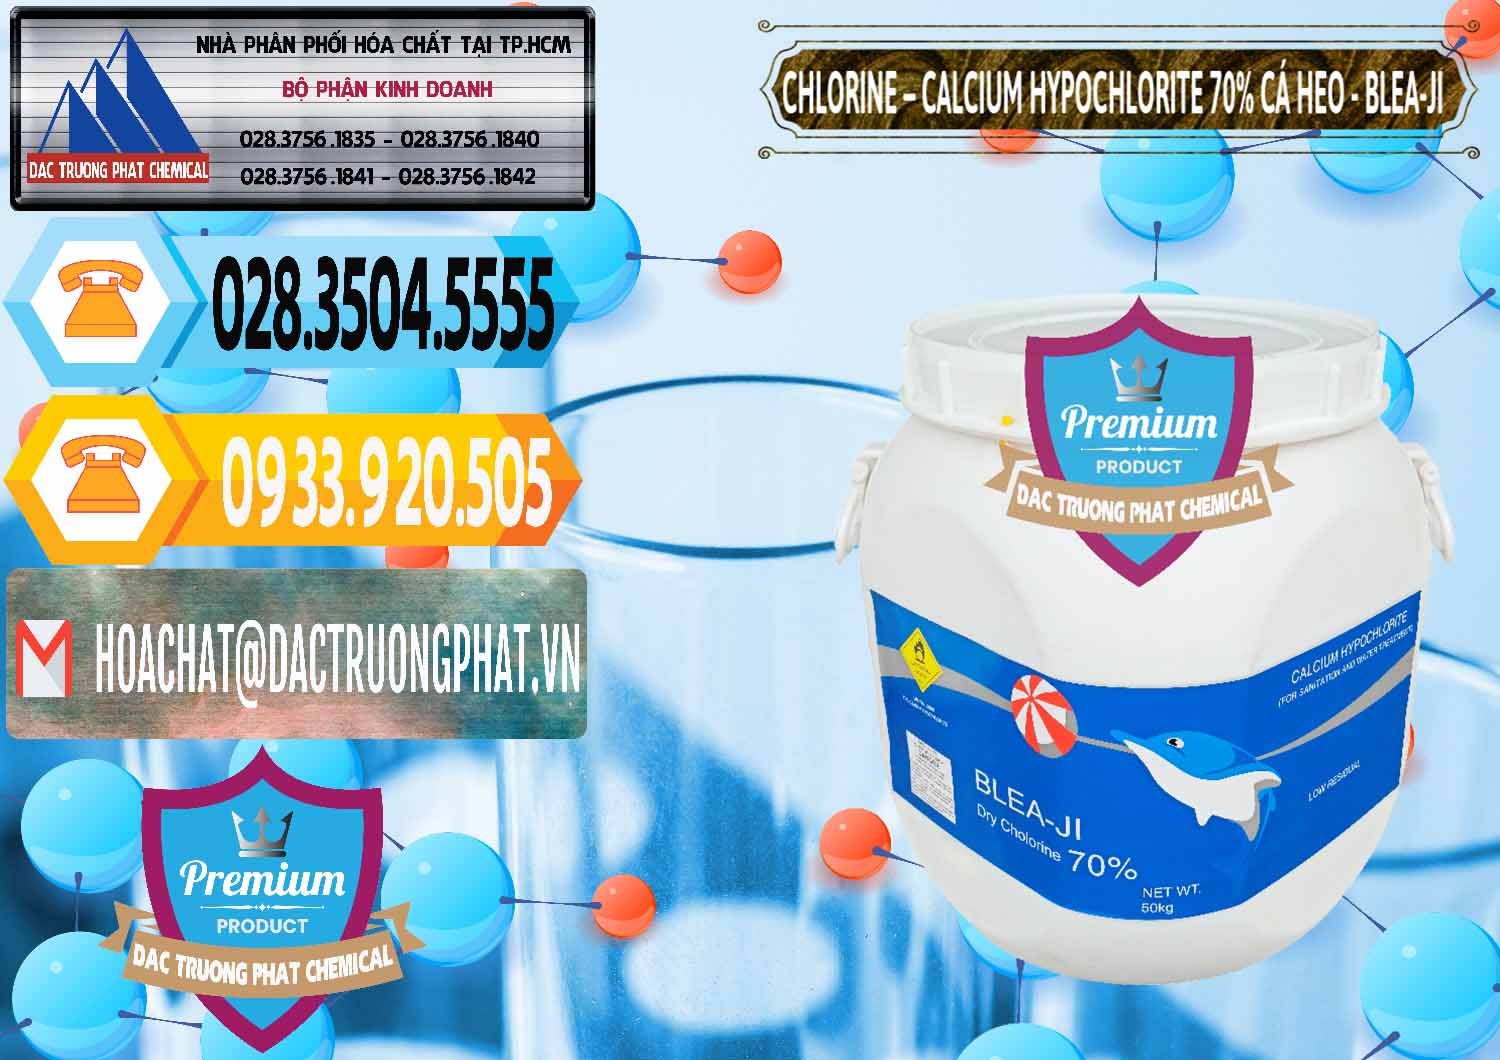 Nơi cung cấp & bán Clorin - Chlorine Cá Heo 70% Blea-Ji Trung Quốc China - 0056 - Cty nhập khẩu và cung cấp hóa chất tại TP.HCM - hoachattayrua.net